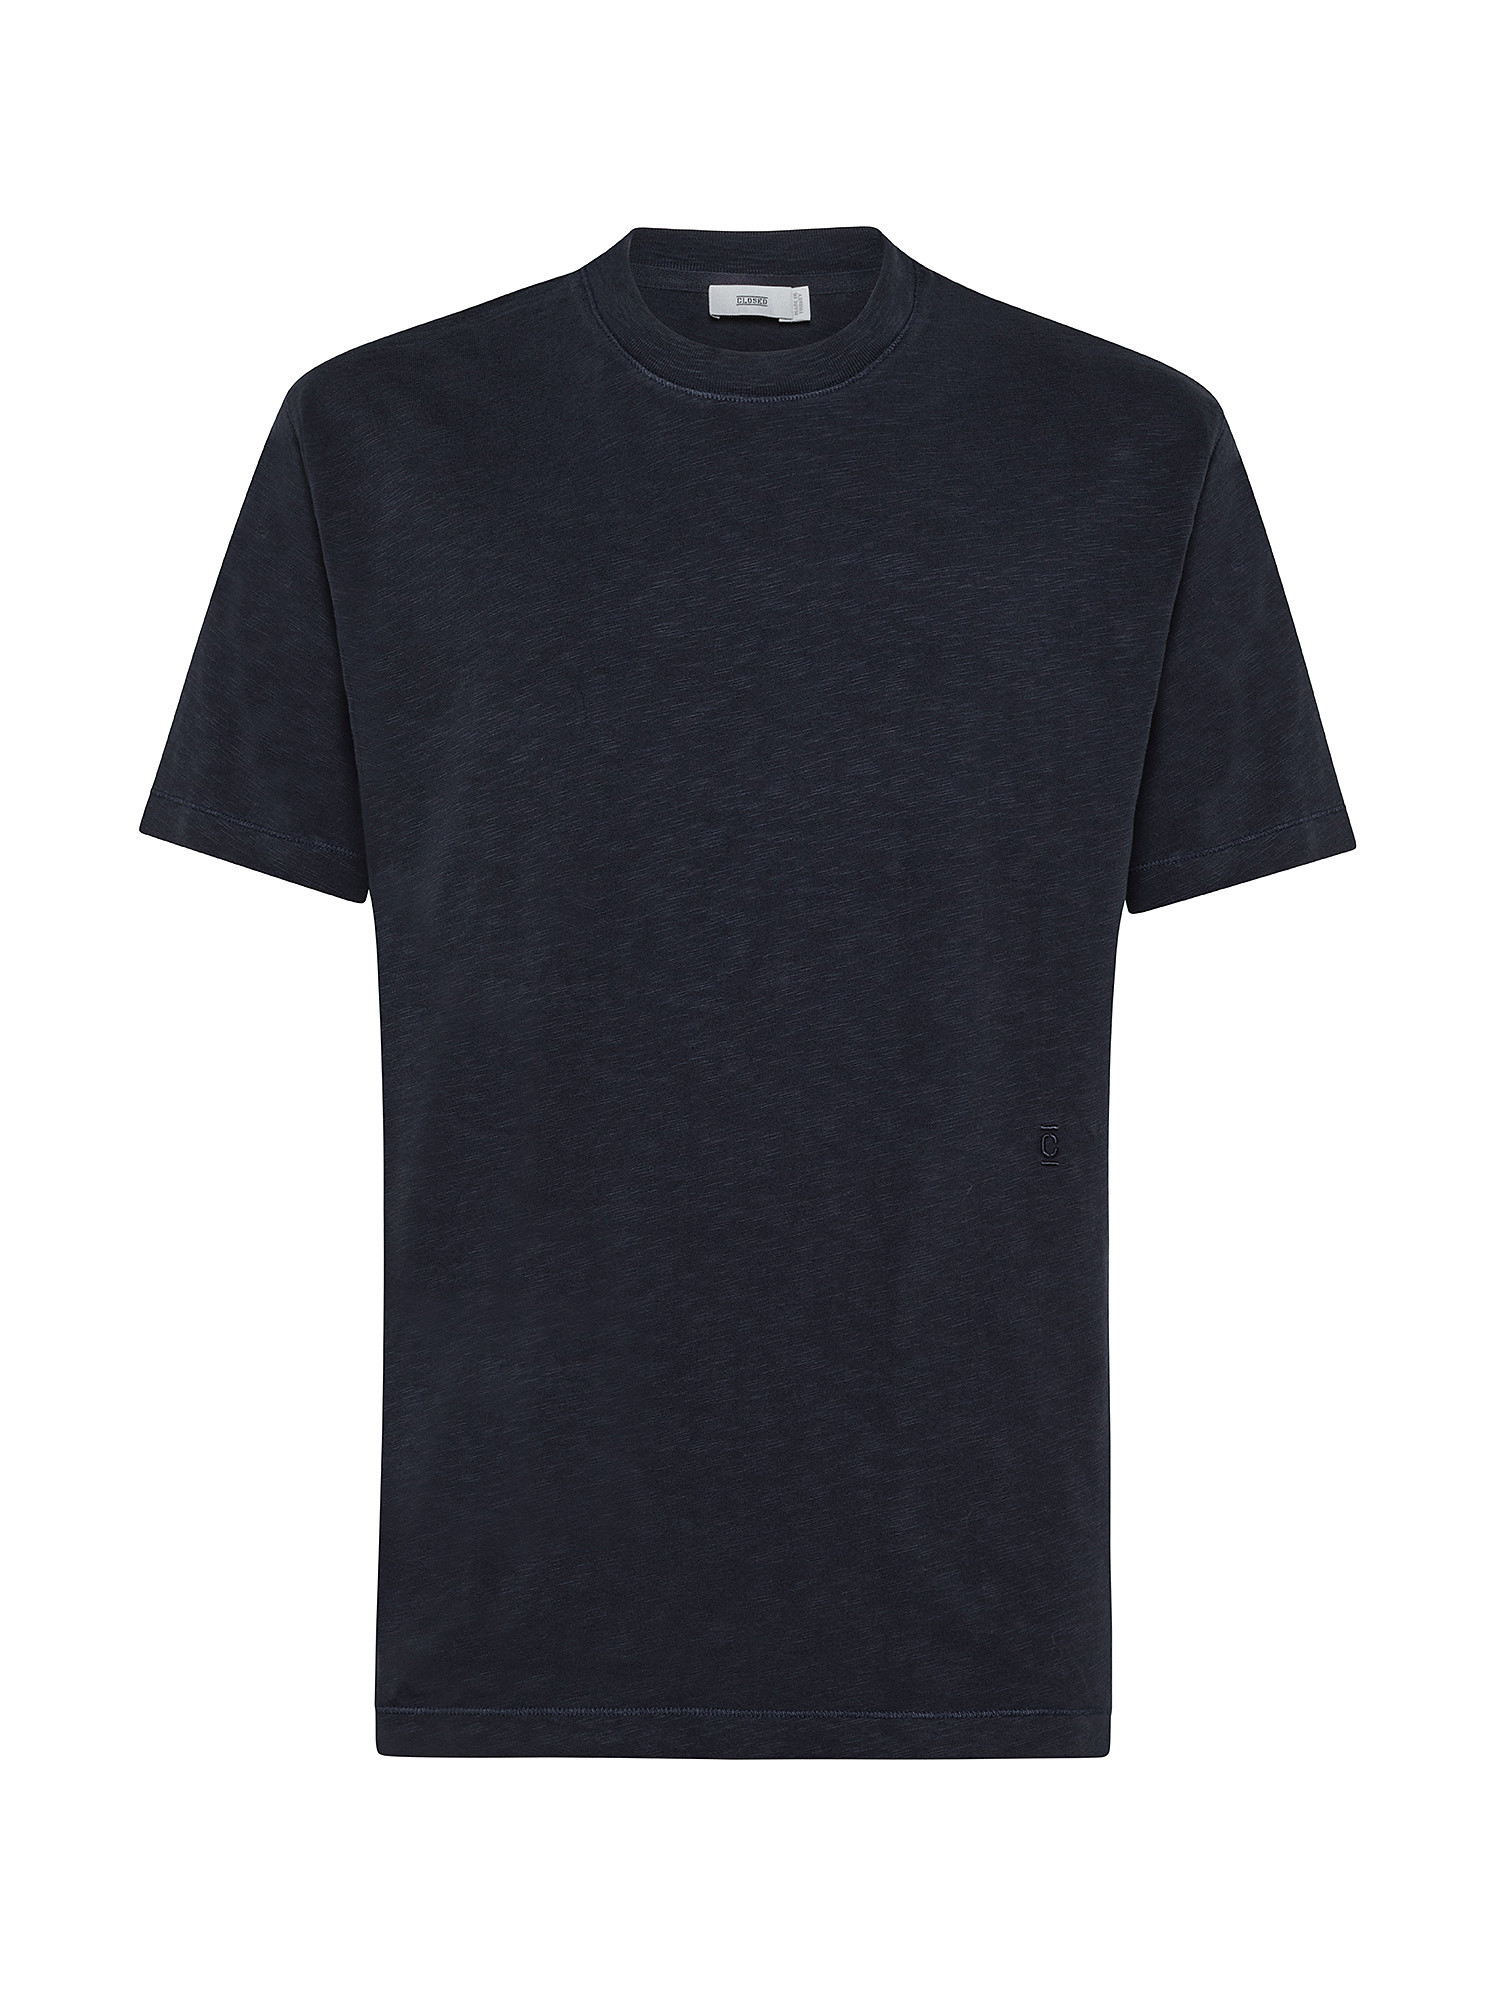 Soft T-Shirt, Dark Blue, large image number 0